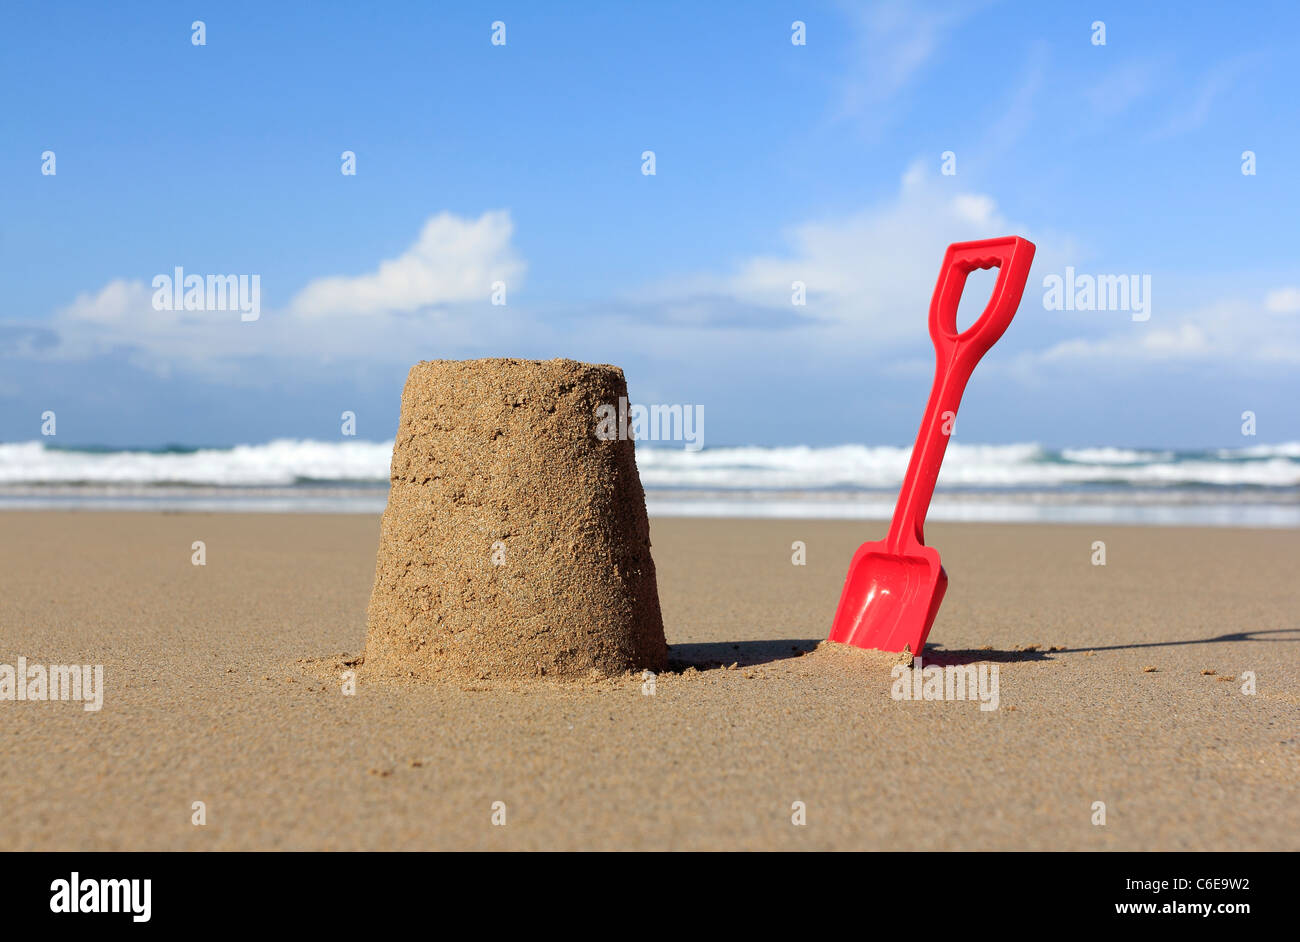 Sandcastle on beach Banque D'Images